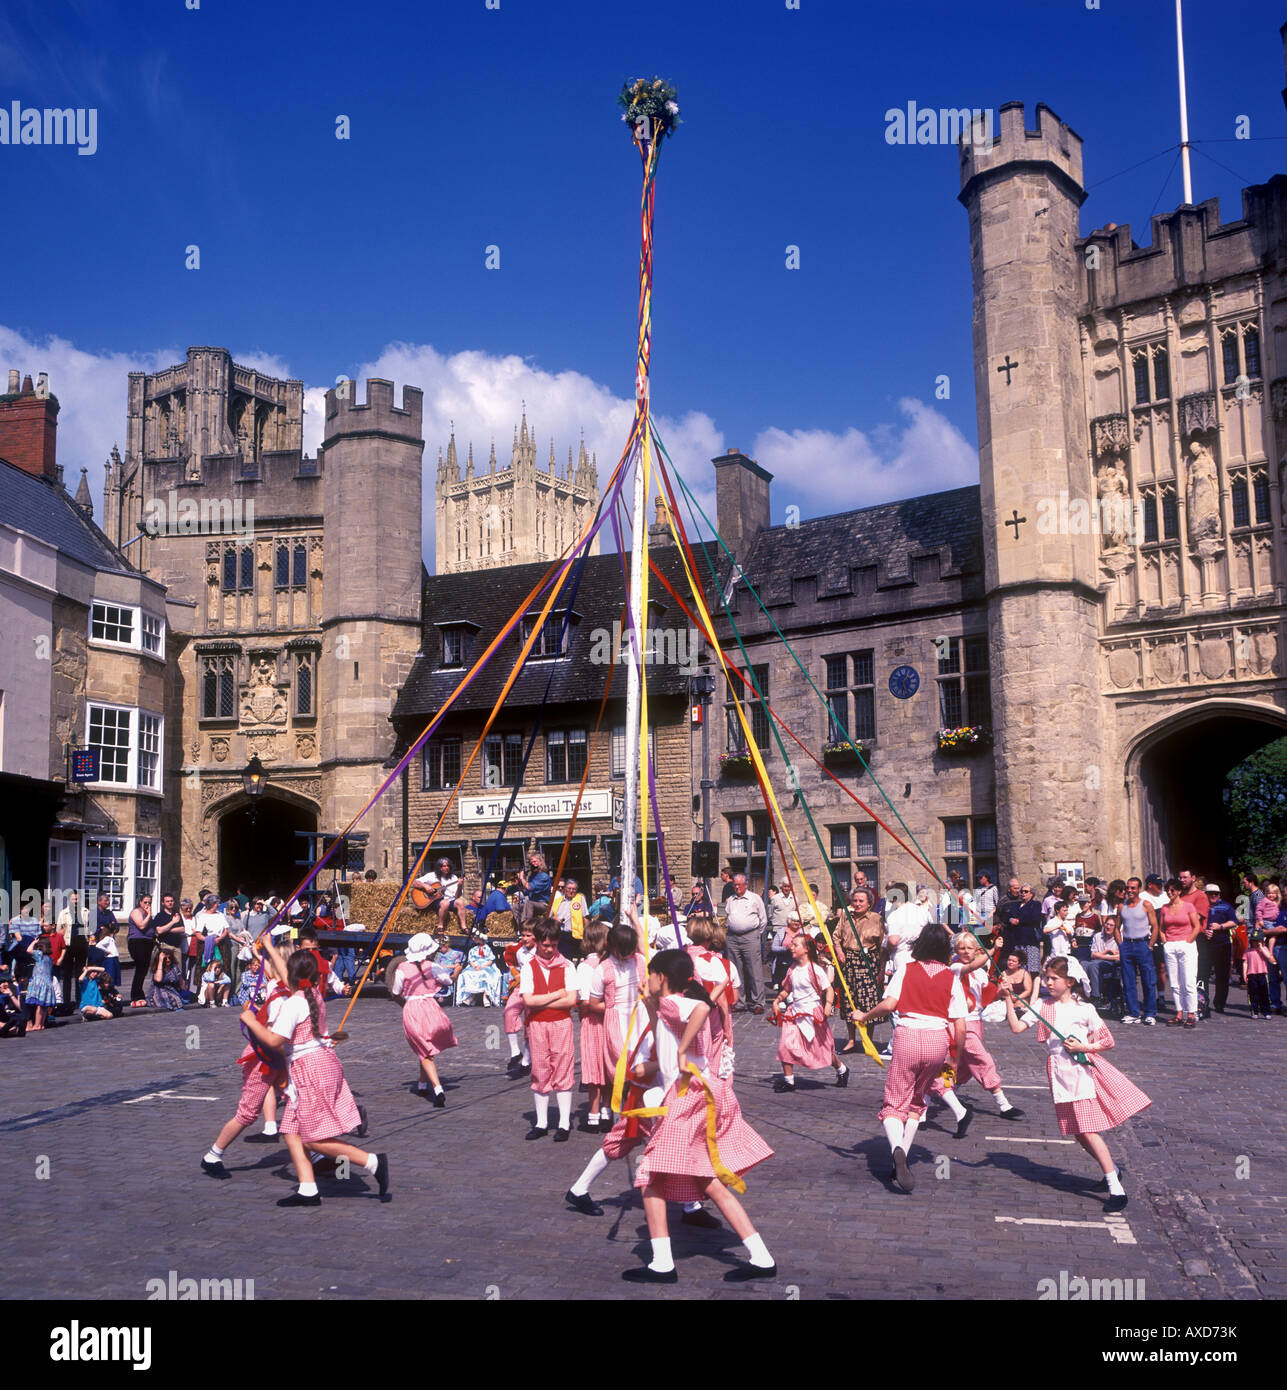 Mayday maypole dance en place près de la cathédrale de Wells Banque D'Images